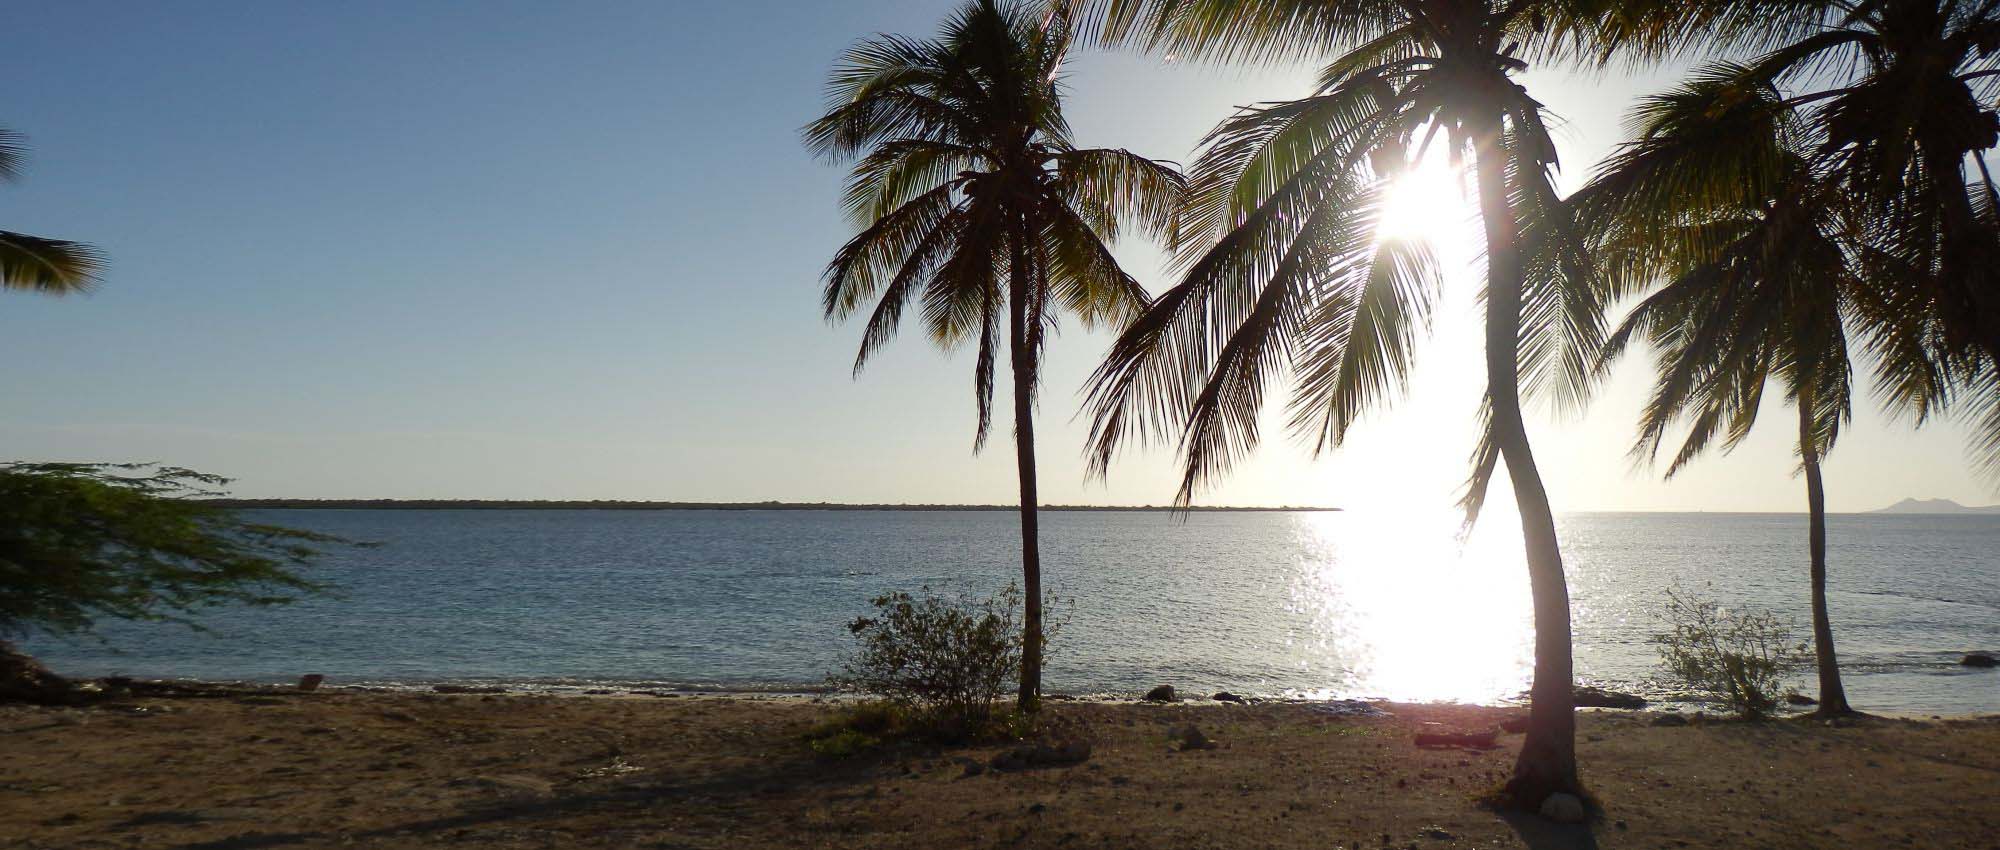 Palmbomen bij de kust tijdens zonsondergang